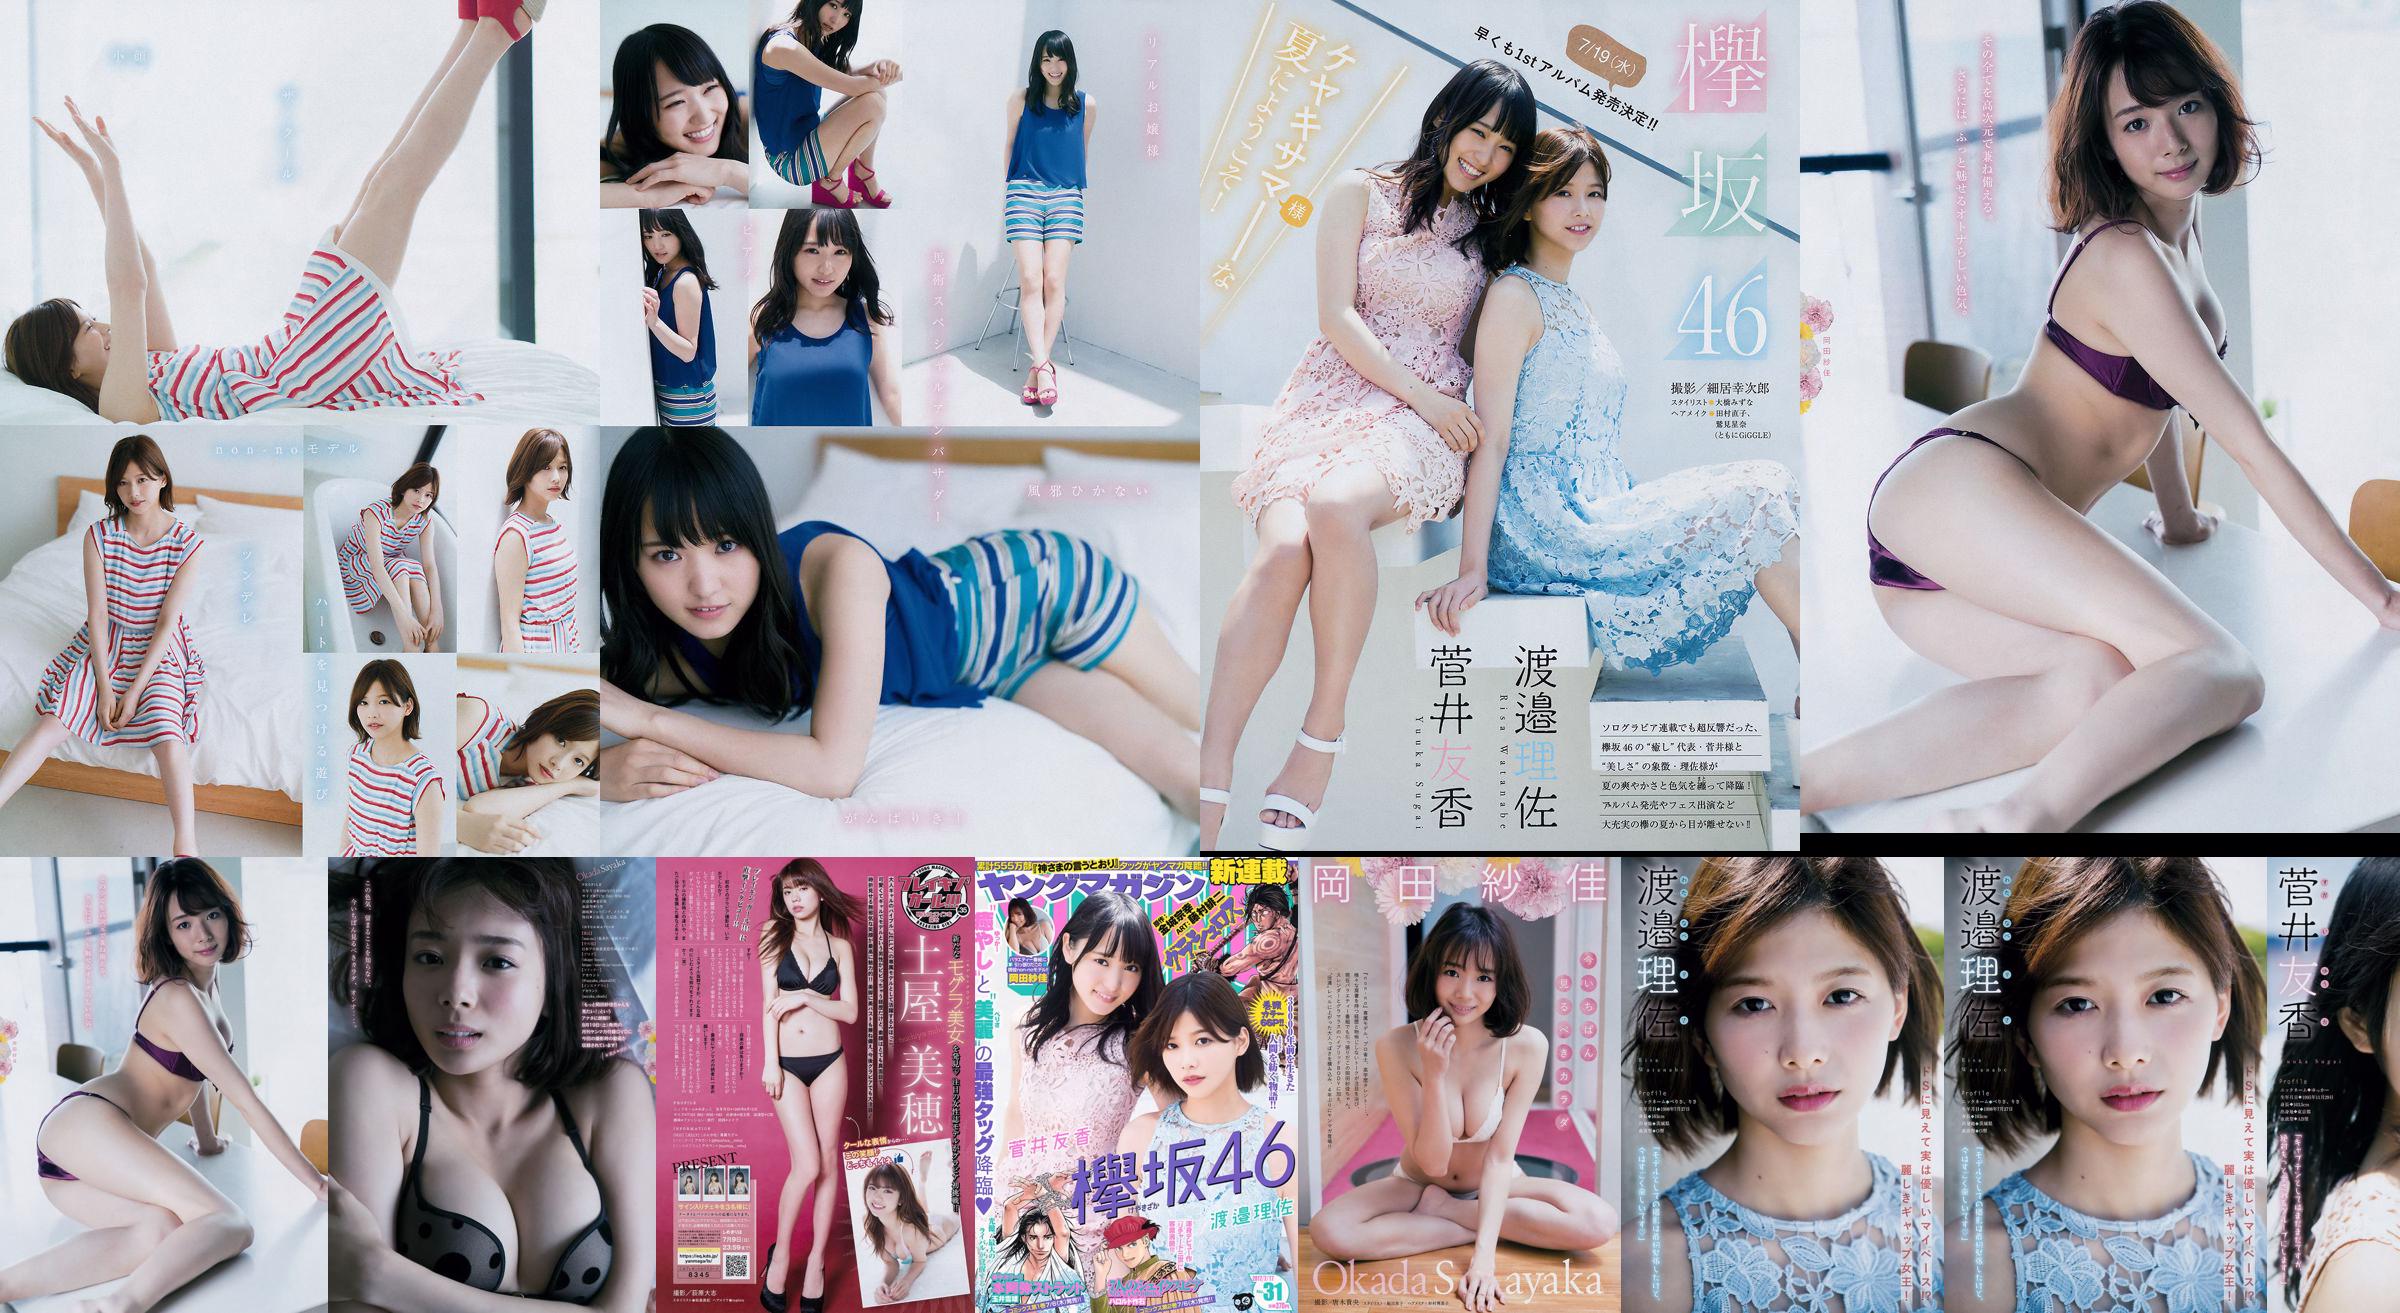 [Young Magazine] Watanabe Risa, Sugai Yuka, Okada Saika 2017 No.31 Photo Magazine No.1b11af Pagina 21